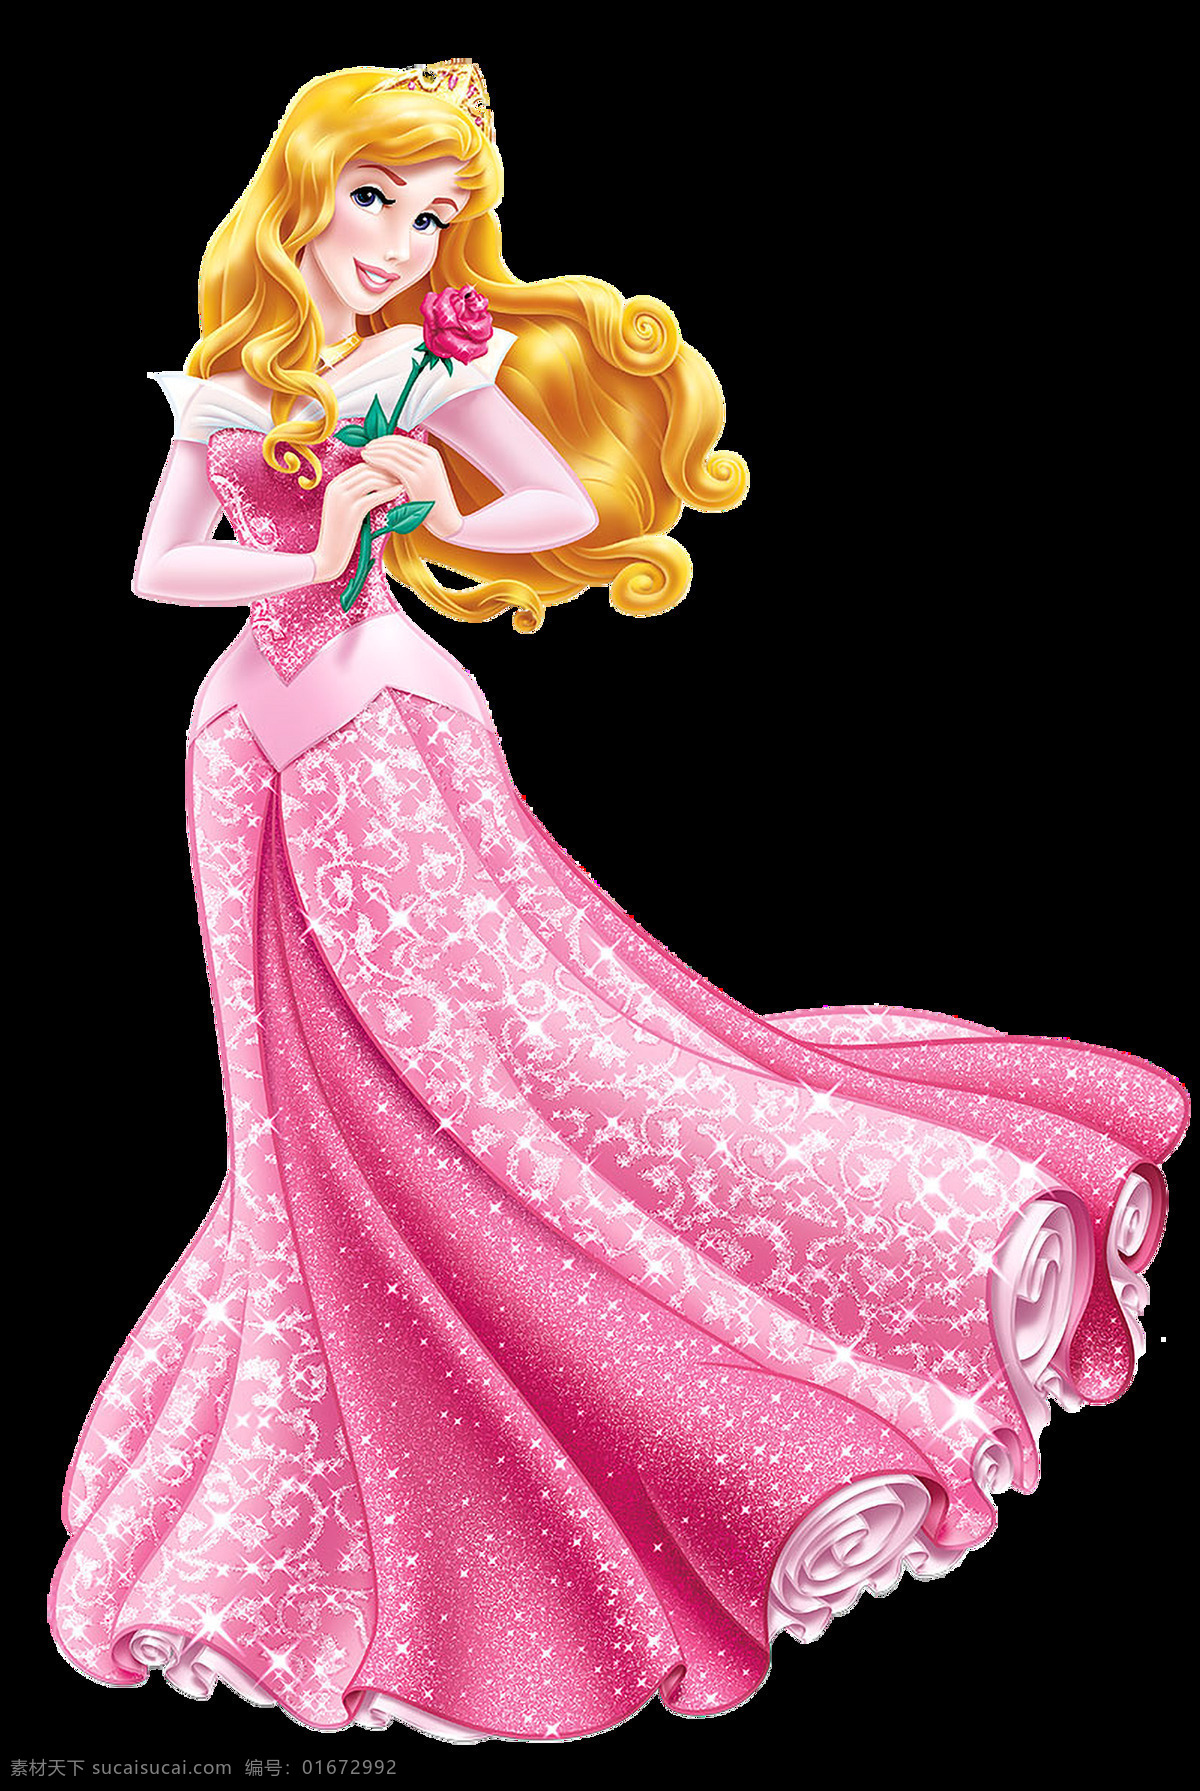 艾洛公主 aurora princesse 迪士尼公主 公主 艾洛 动漫动画 动漫人物